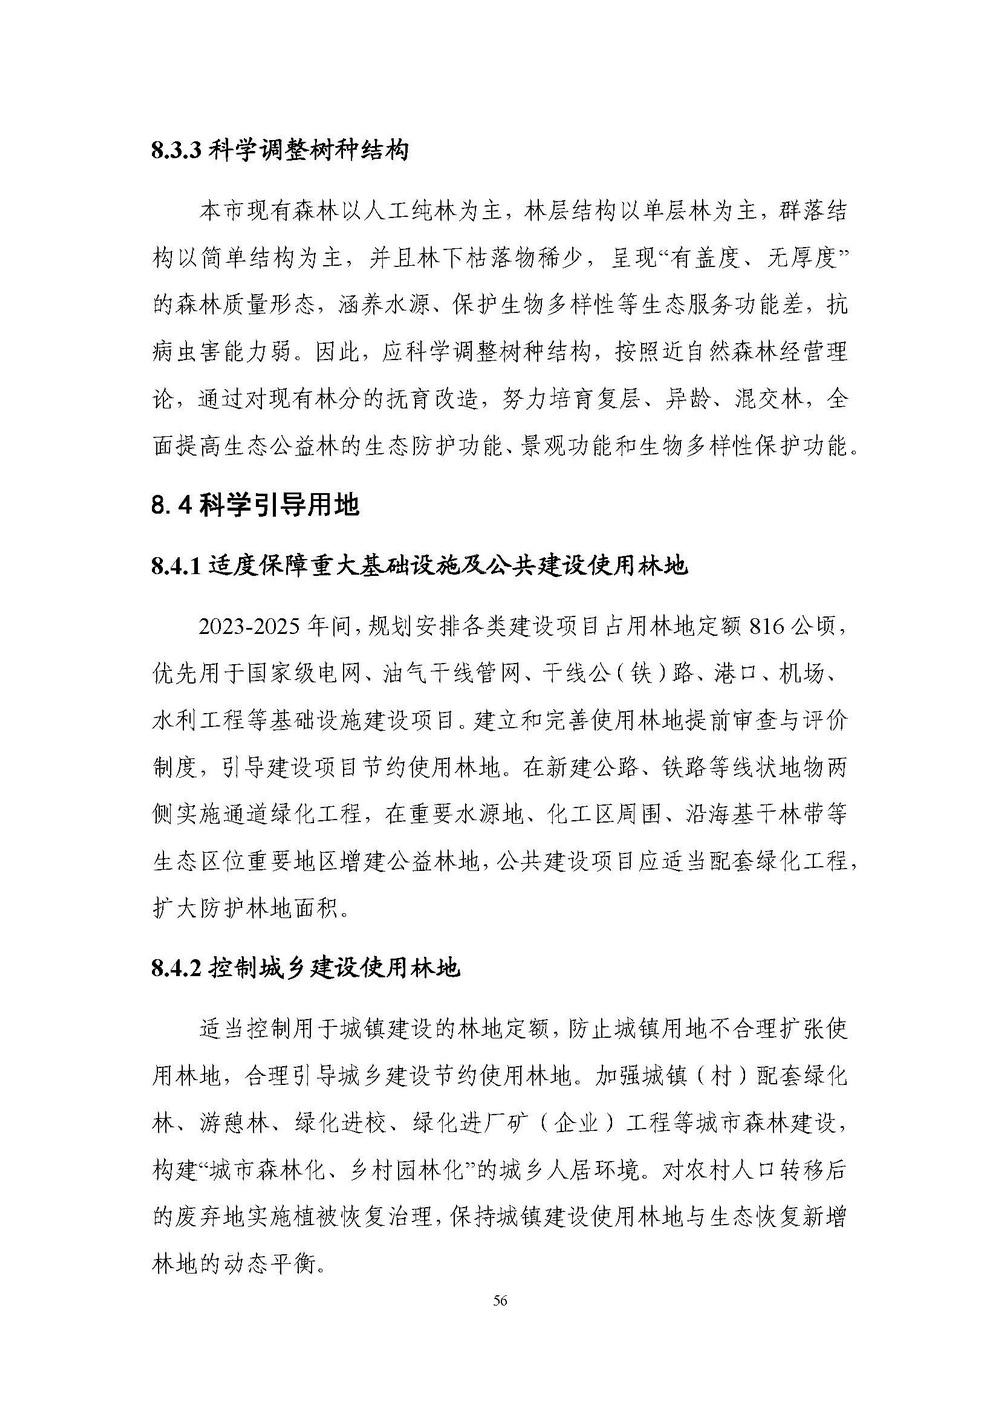 上海市森林和林地保护利用规划文本 公开稿 附图_页面_59.jpg